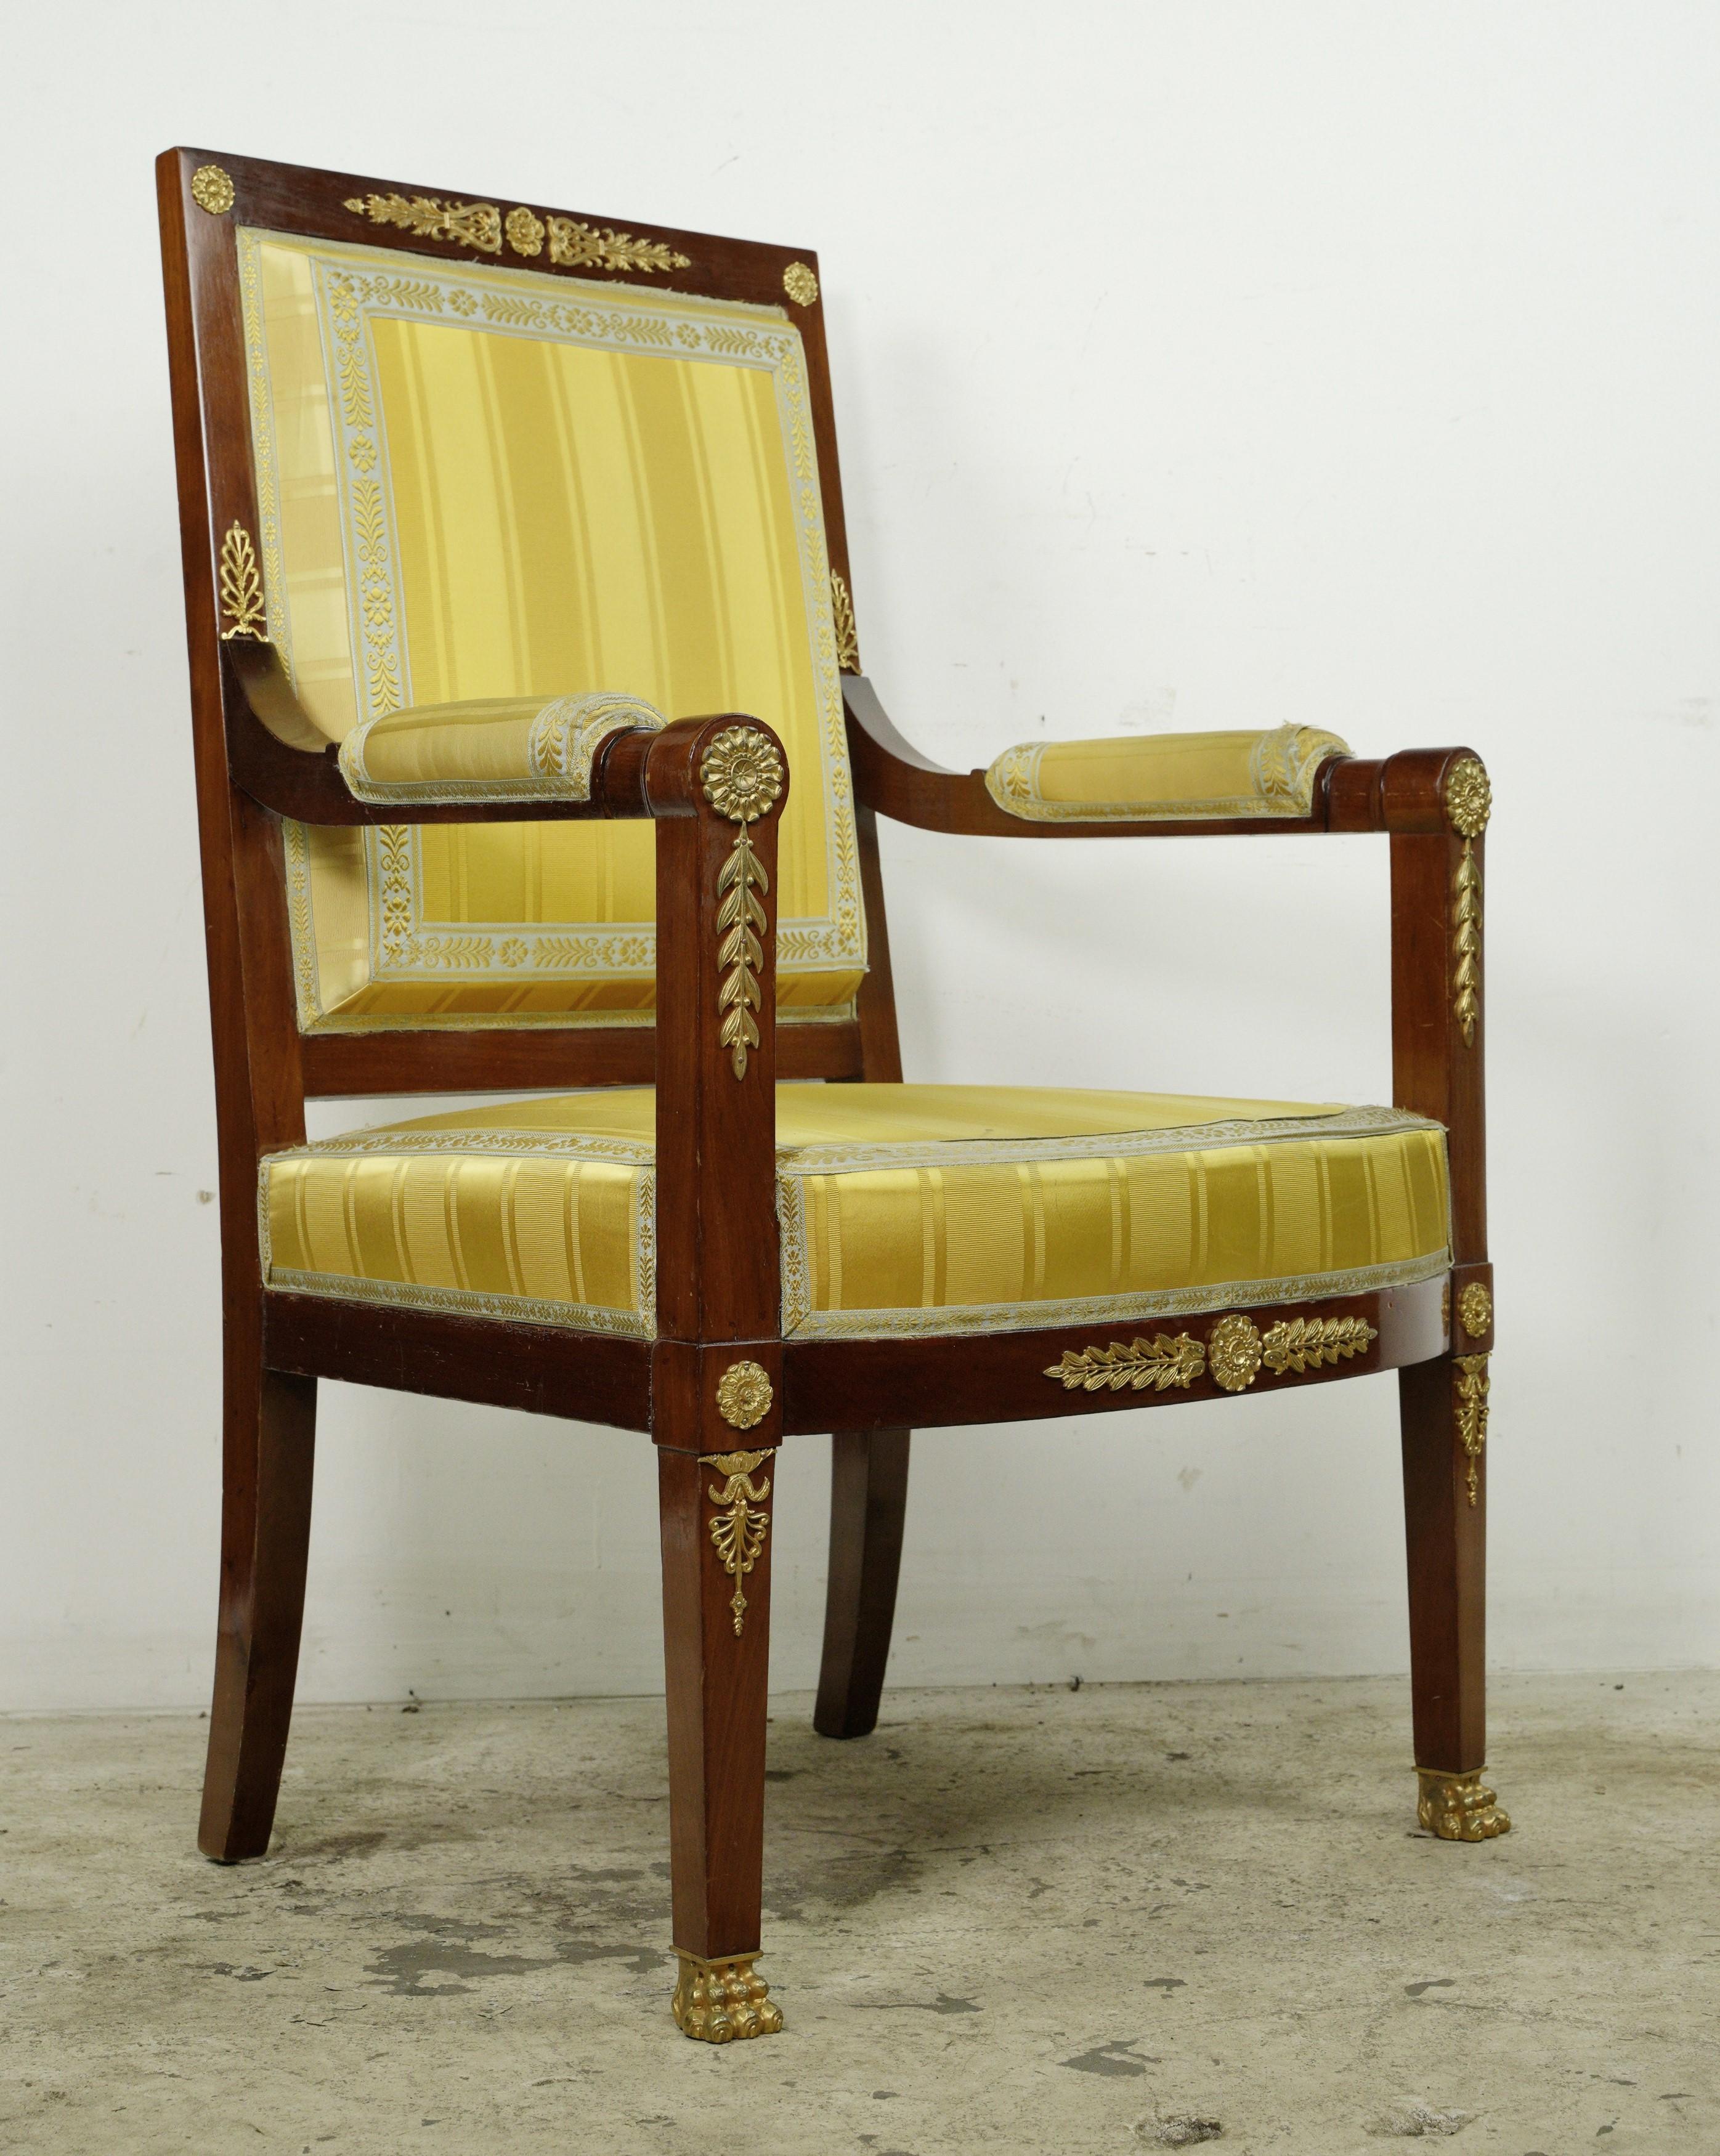 Dieses Stück stammt aus einem geschätzten Nachlass in Greenwich, Connecticut. Dieser Sessel hat einen Mahagoni-Rahmen mit vergoldeten Messing-Akzenten, der mit verschlungenen Schnörkeln und Blättern geschmückt ist. Die gelb gestreifte Polsterung